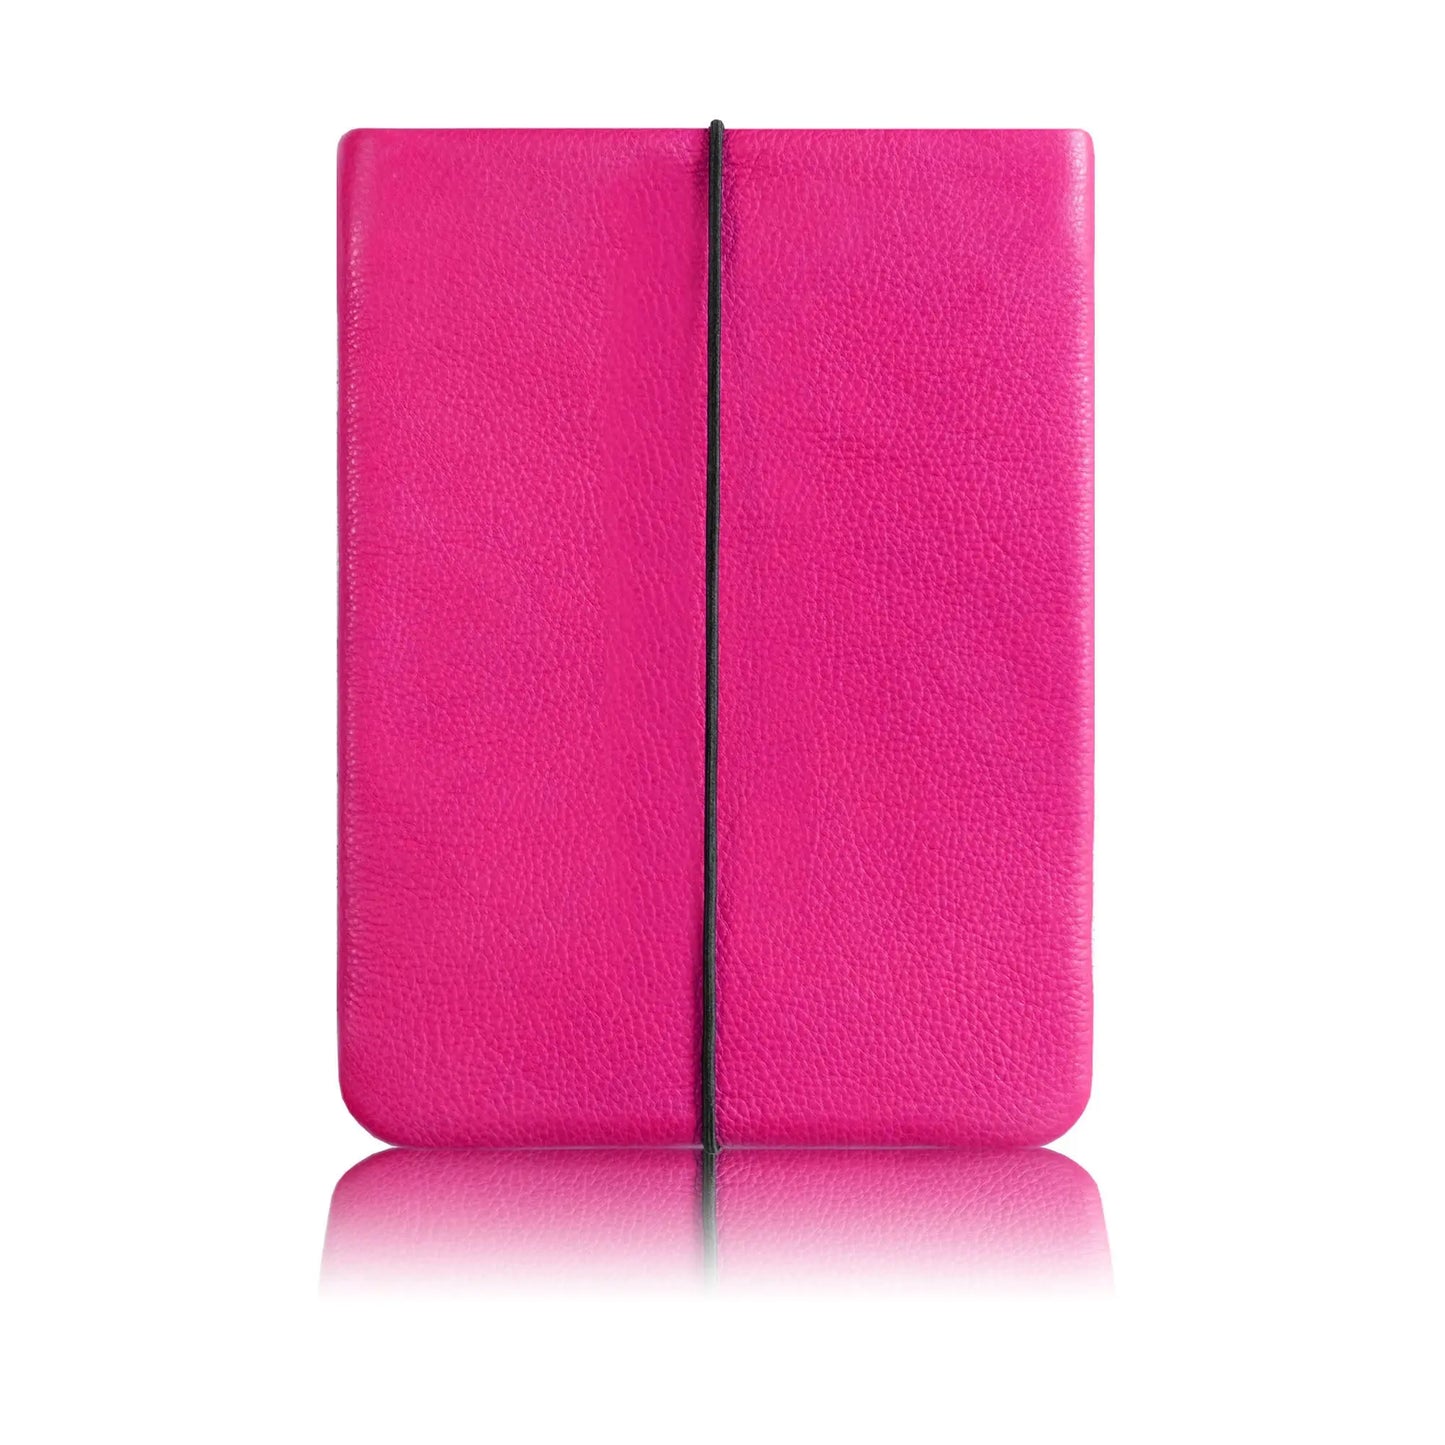 neonpinkes Ledercase für iPads mit schwarzem Verschlussgummi von Vandebag